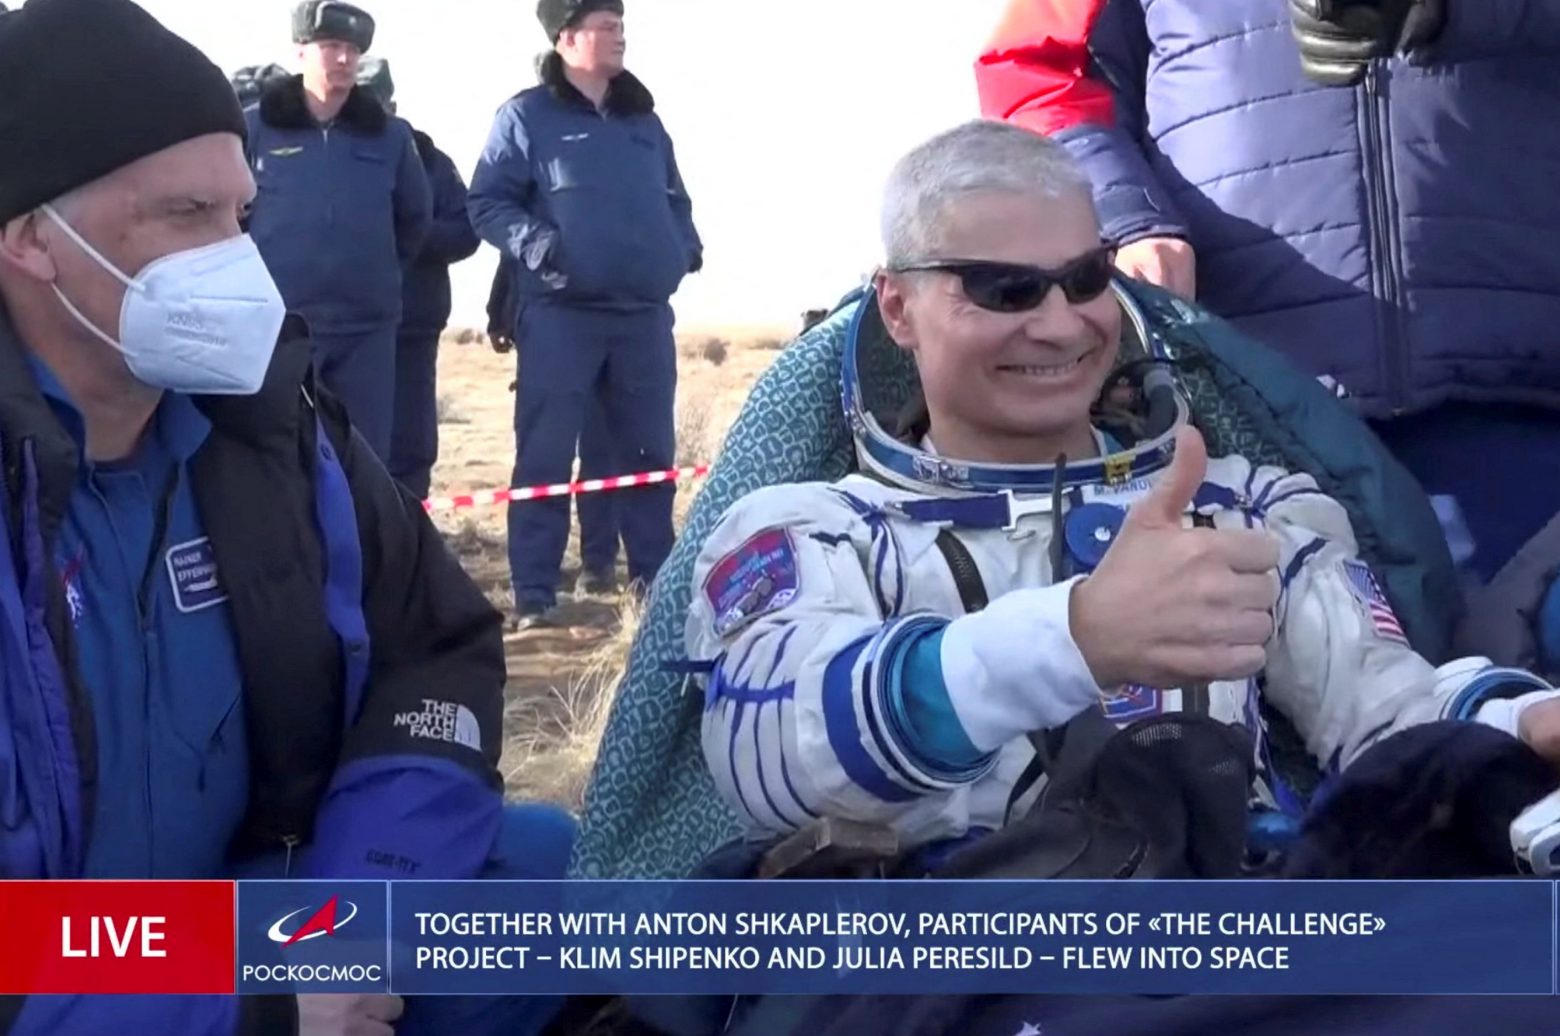 Με ρωσικό σκάφος επέστρεψε ο αμερικανός που κατέρριψε ρεκόρ παραμονής στο Διάστημα